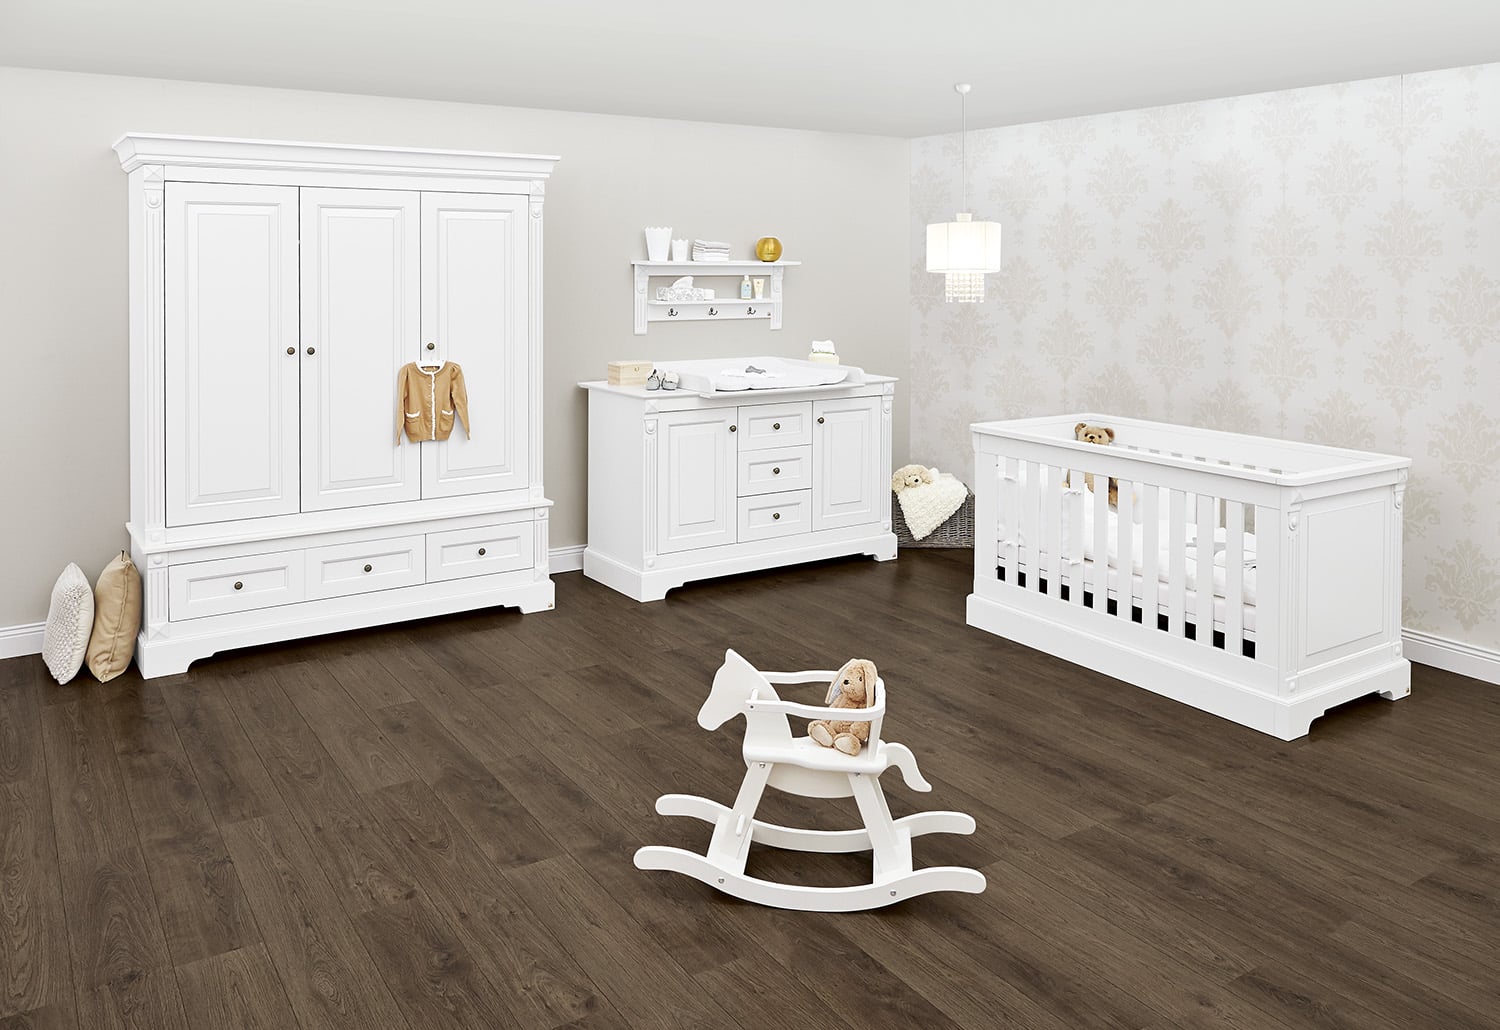 Chambre bébé complète en bois : lit évolutif, commode à langer et armoire -  Pinolino